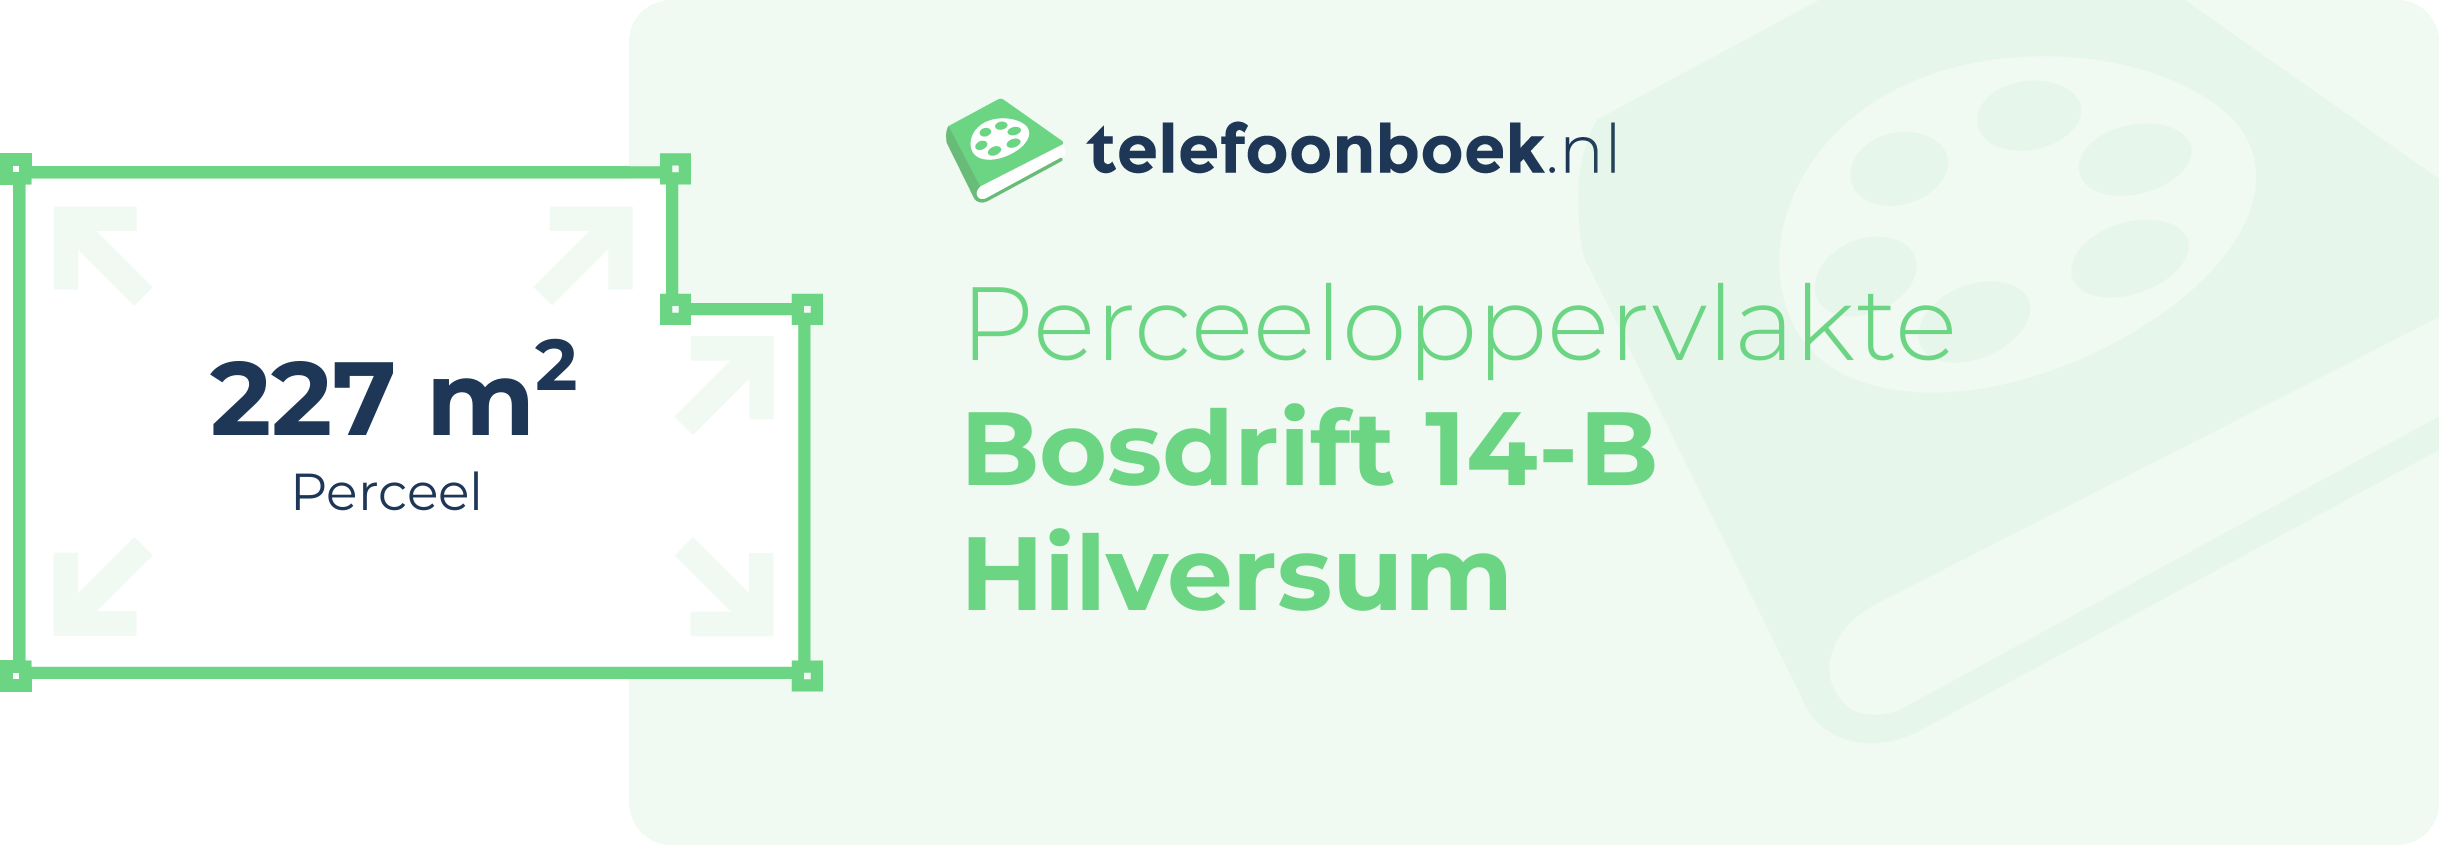 Perceeloppervlakte Bosdrift 14-B Hilversum